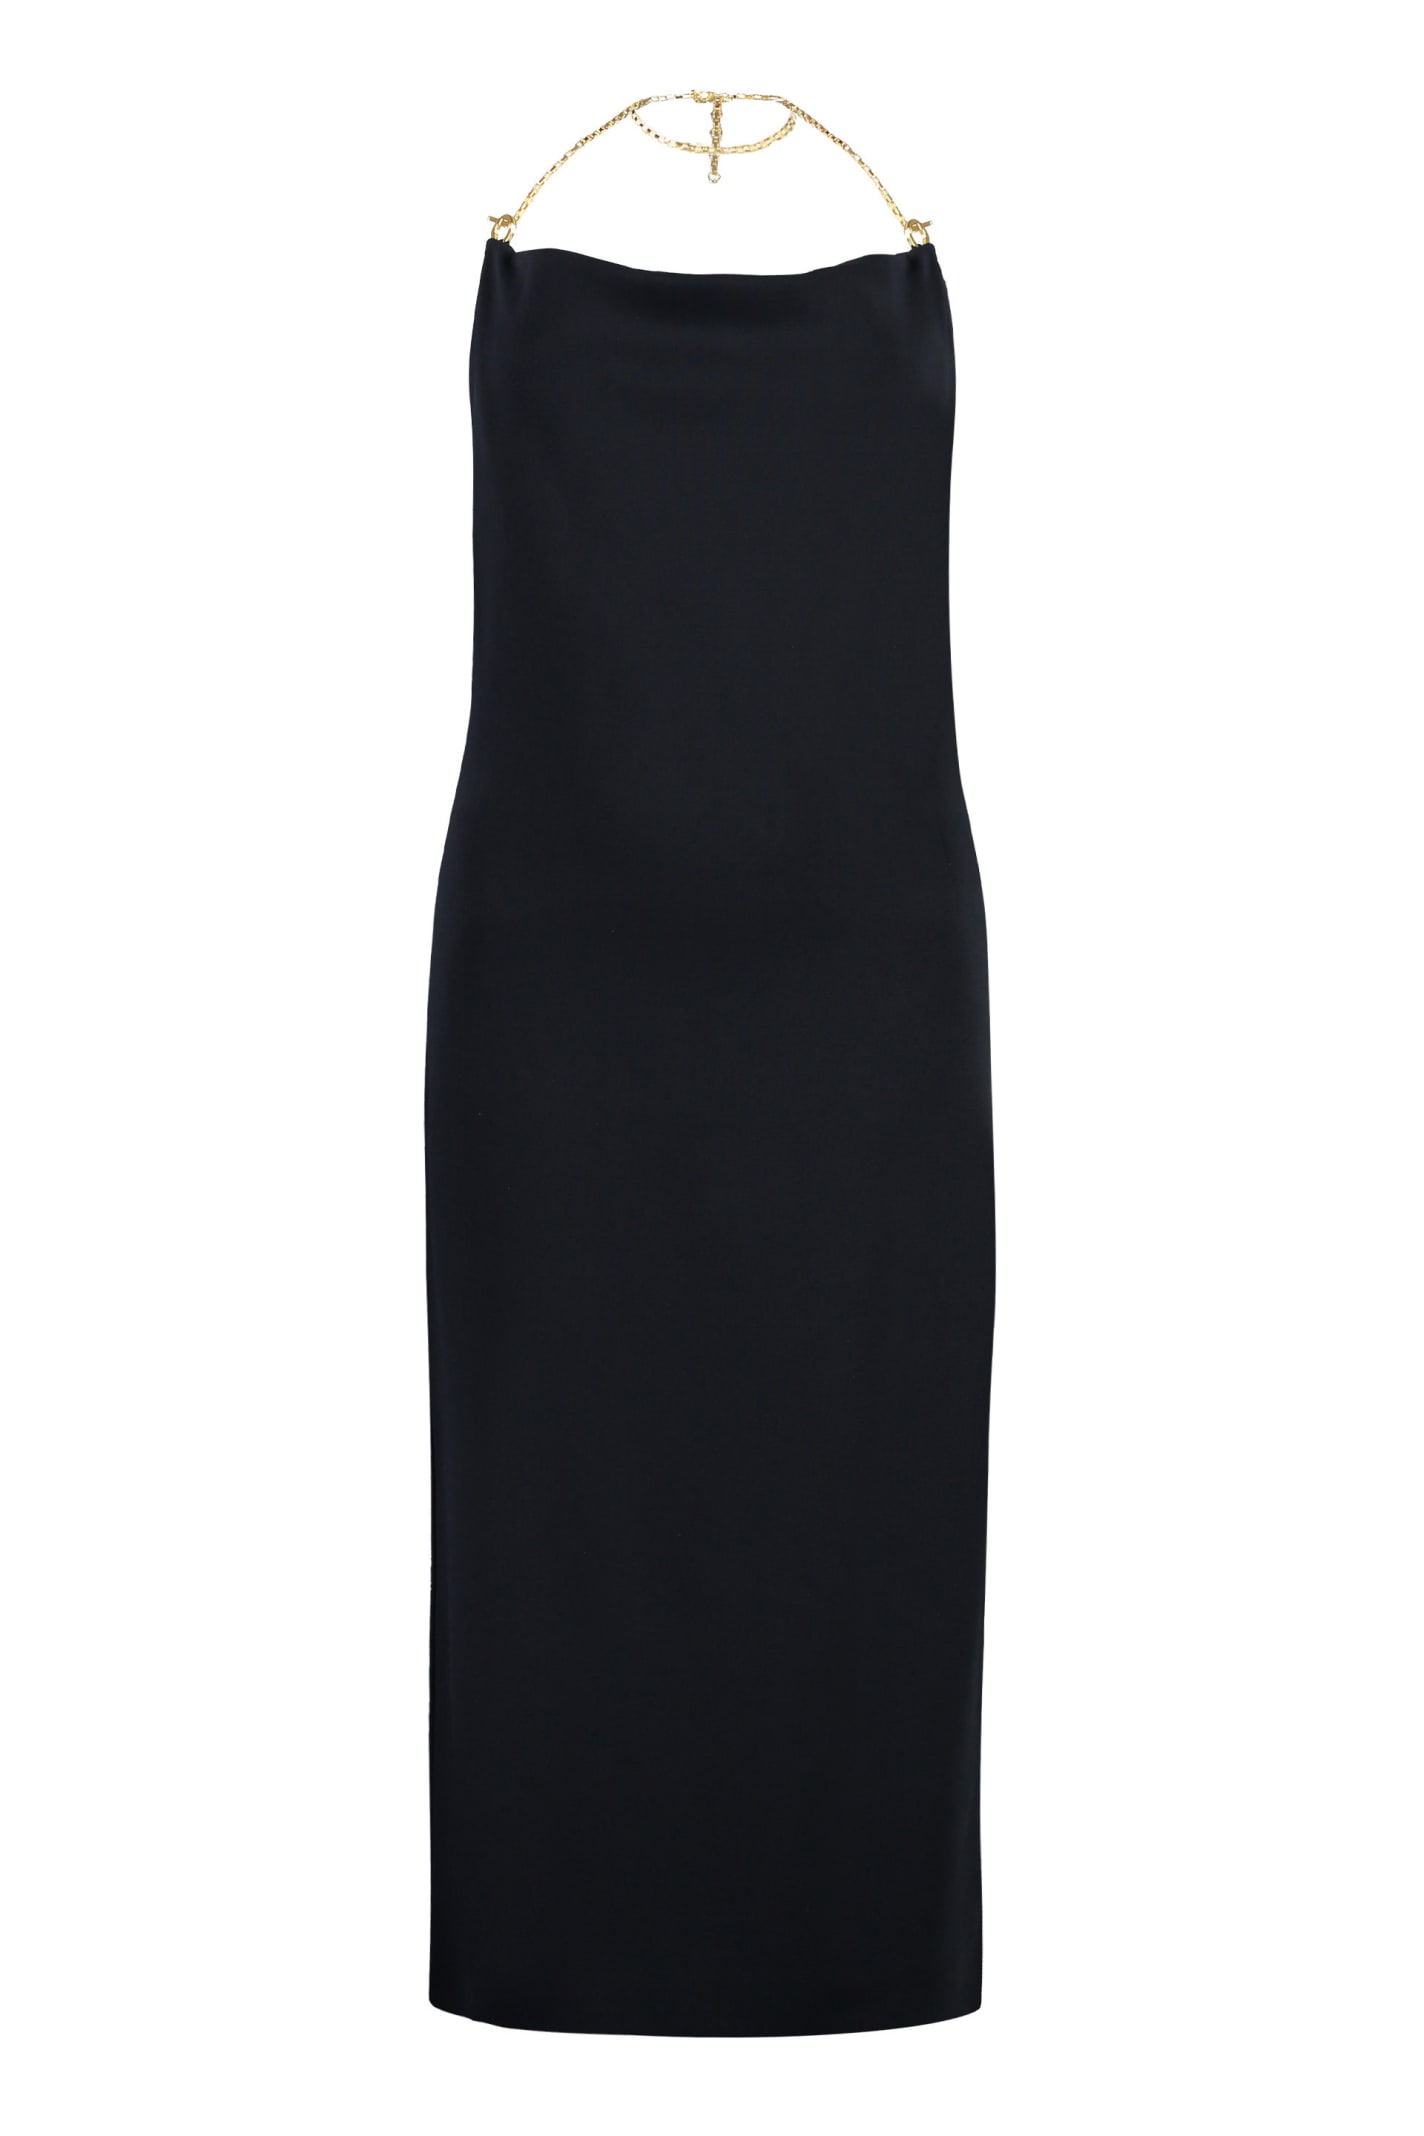 Shop Bottega Veneta Stretch Viscose Dress In Black